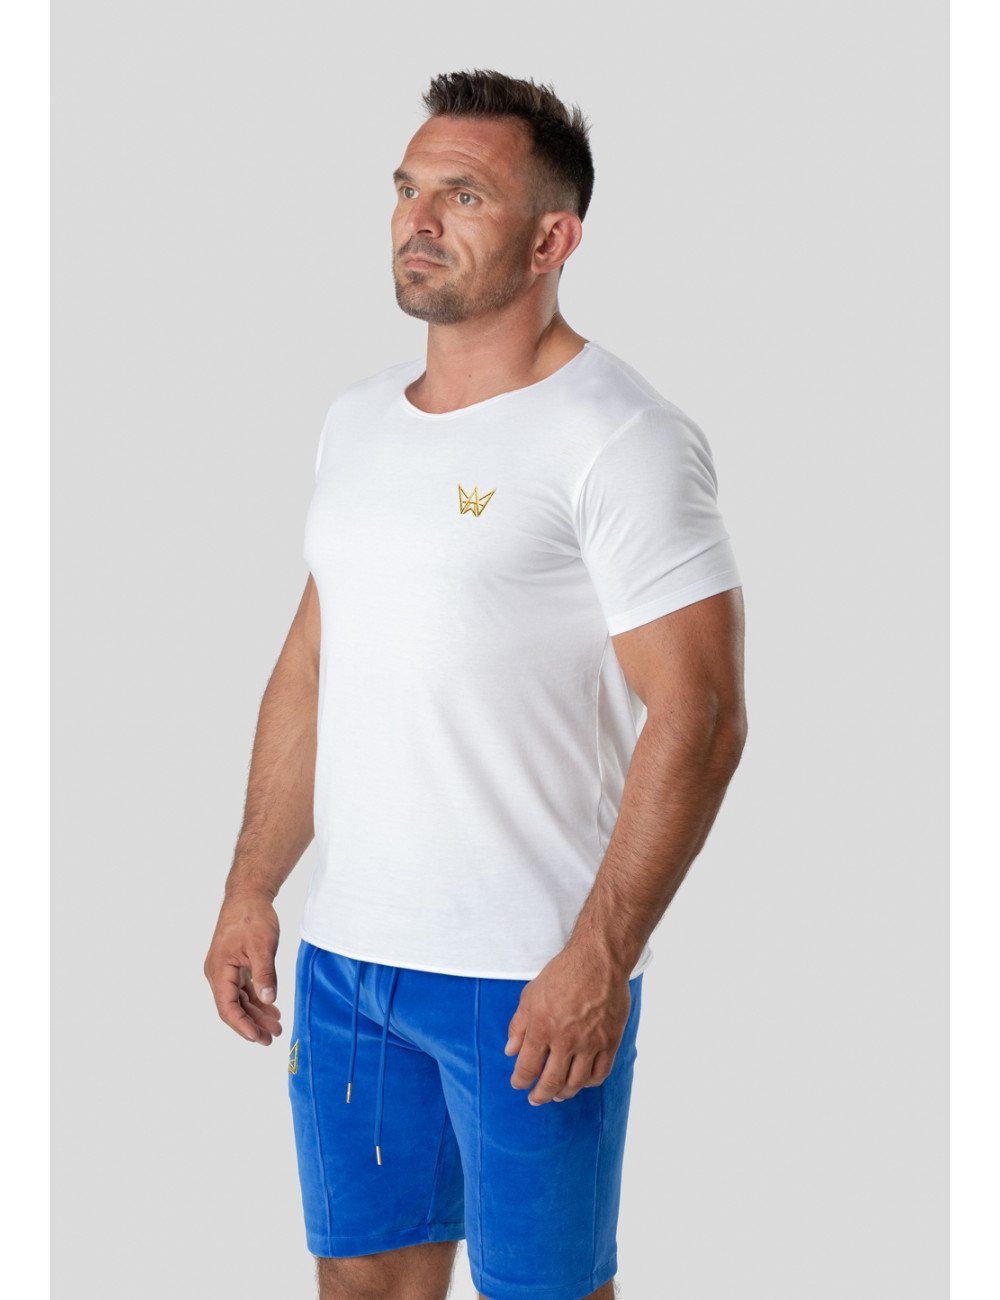 TRES AMIGOS T-Shirt Weiß Rundhalsshirt mit Trenndiges Logo